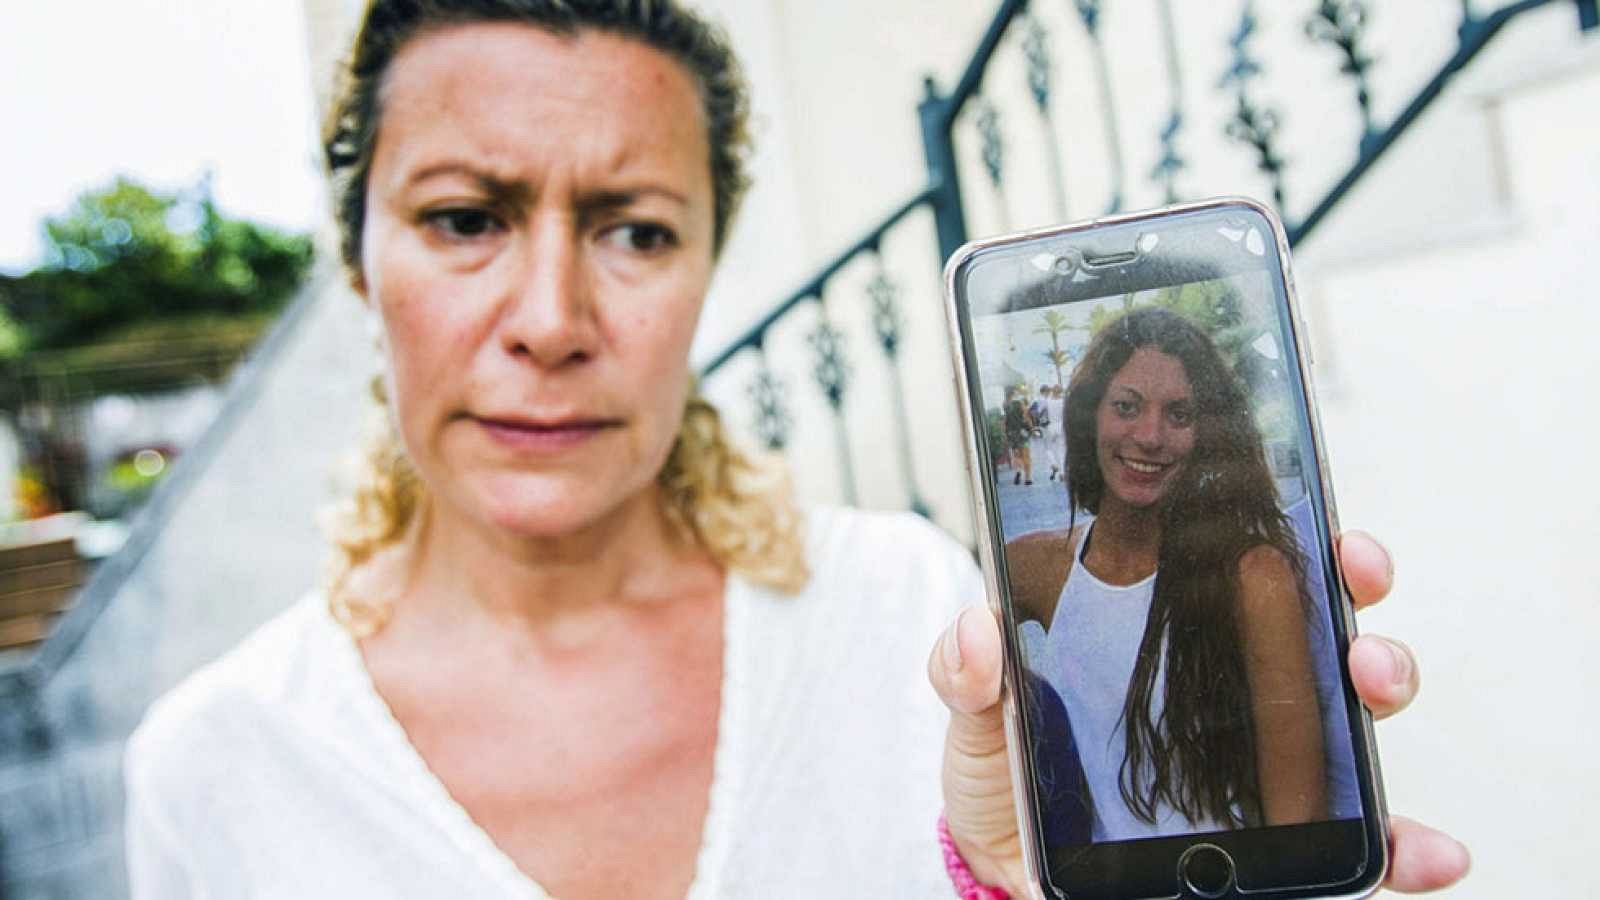 La Mañana - Caso Diana Quer: La audiencia de A Coruña solicita una segunda autopsia